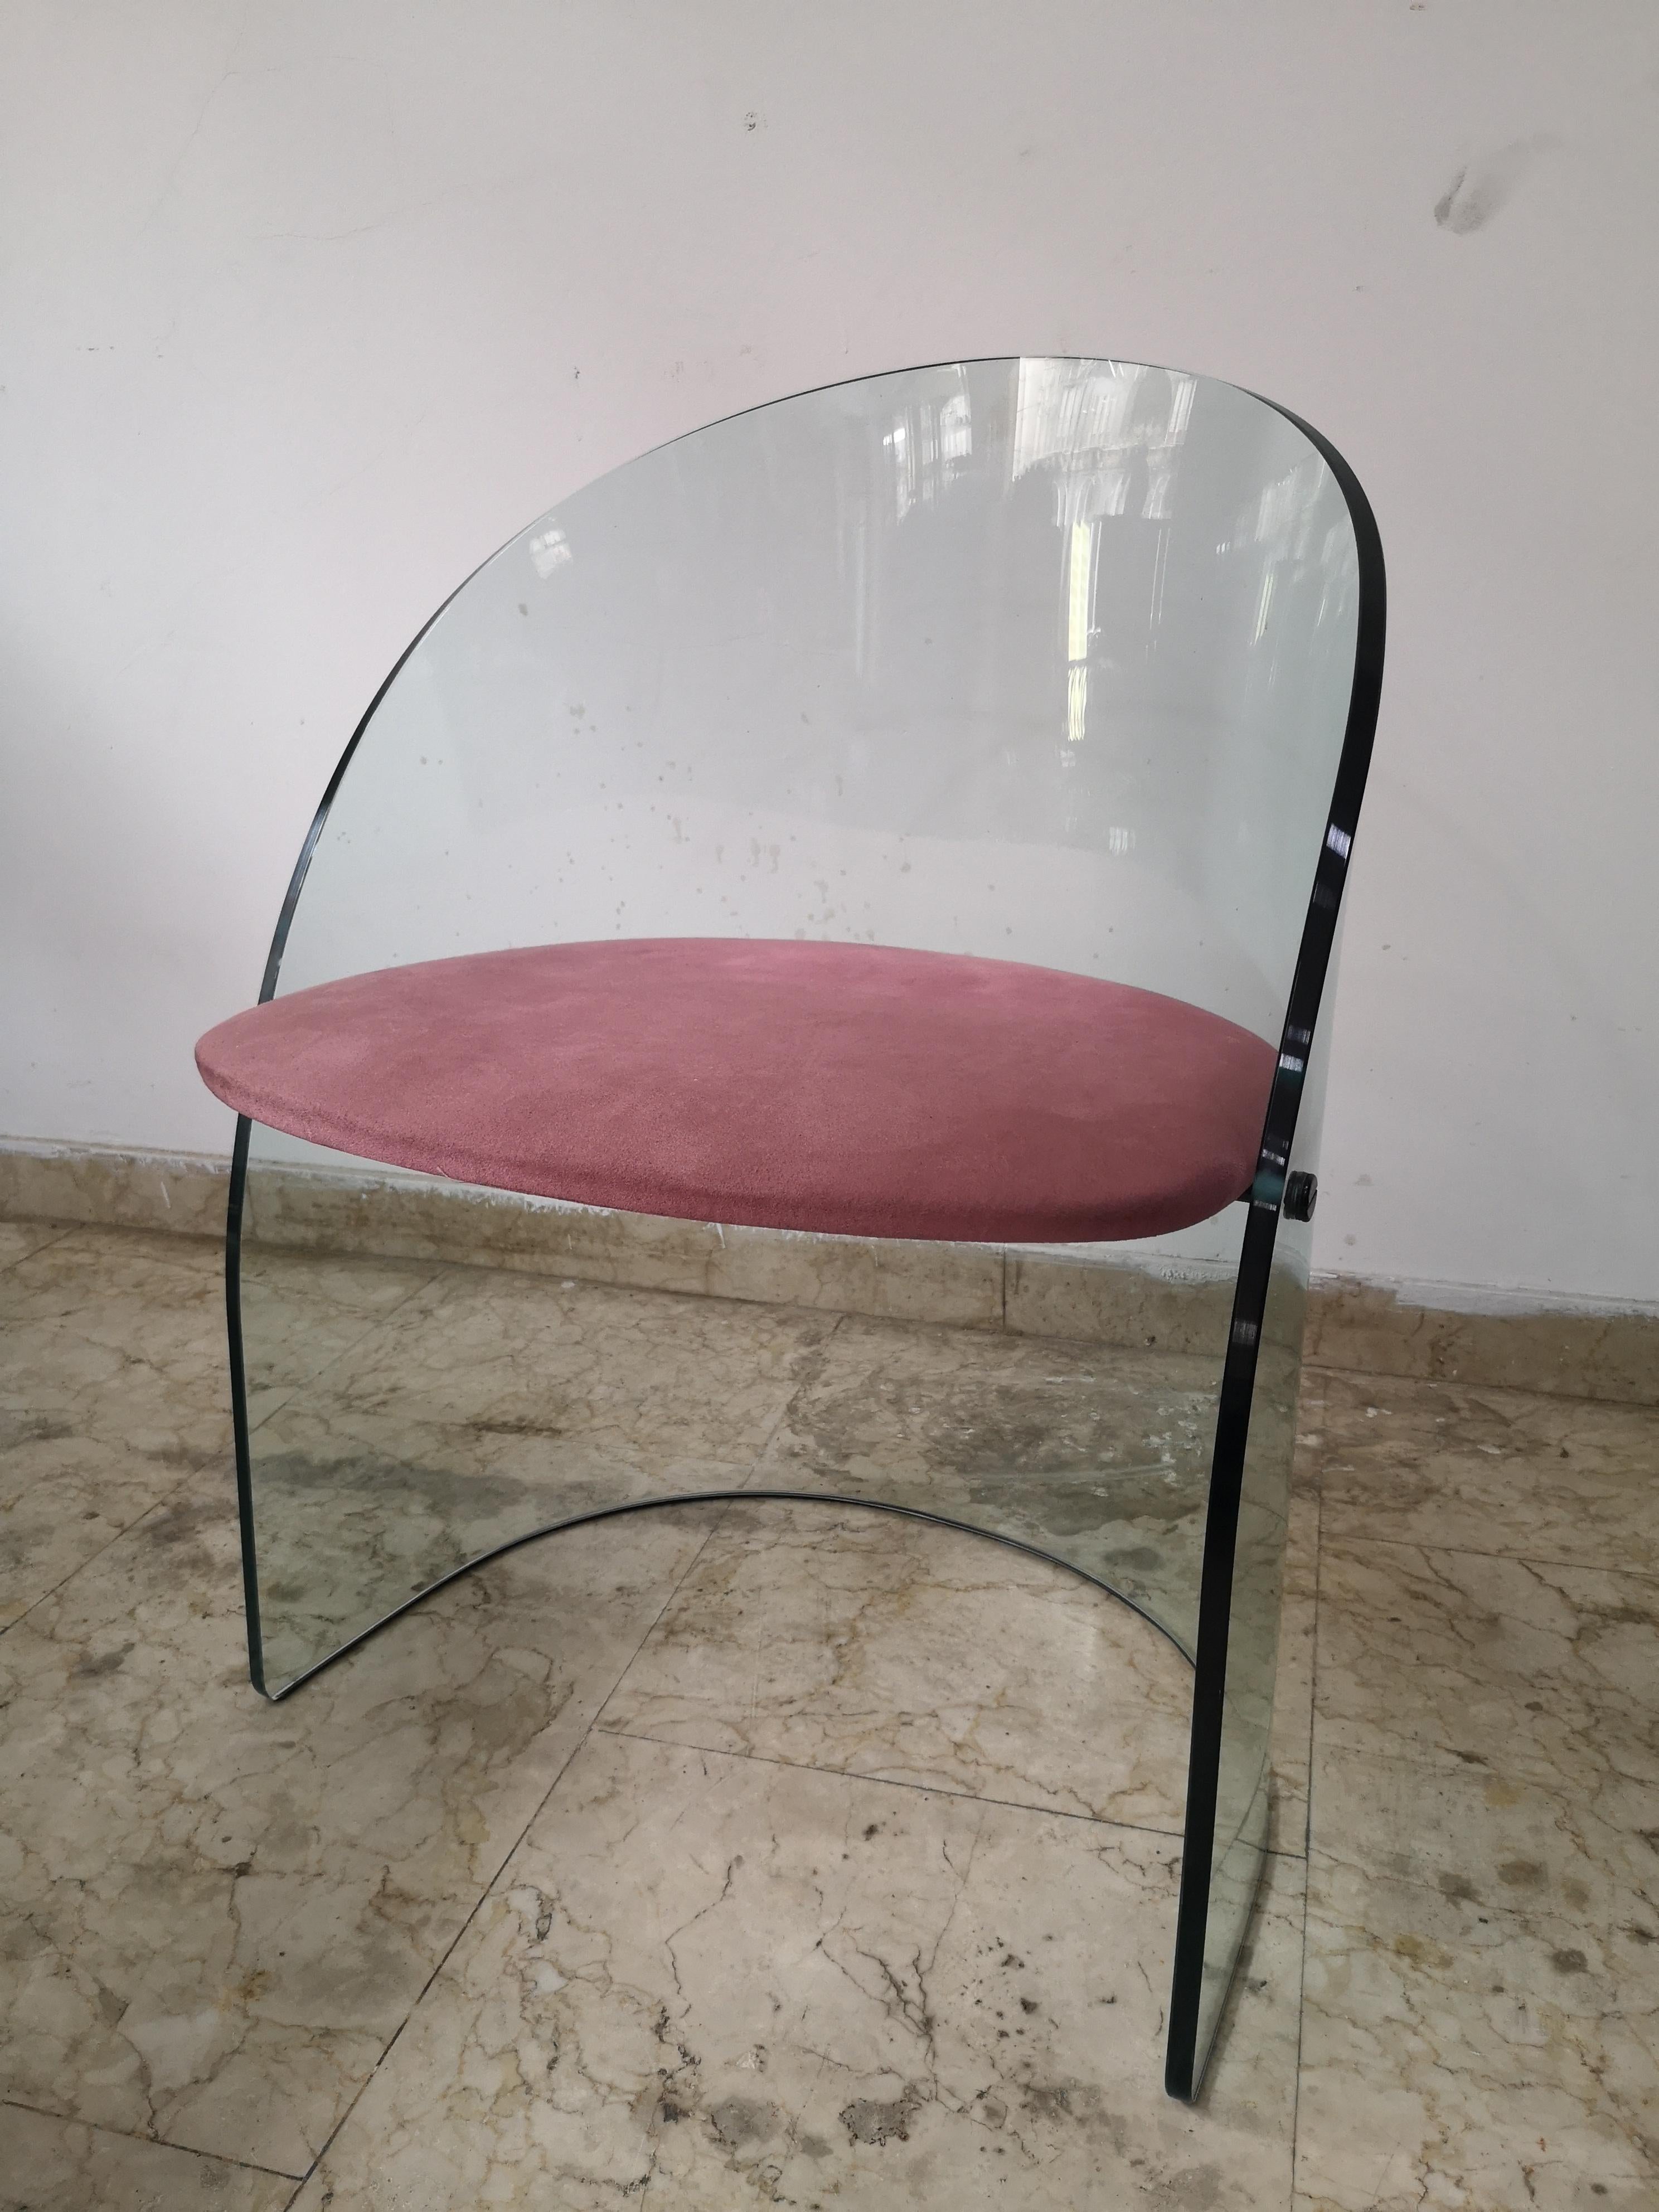 Sedia in vetro massiccio prodotta da Fiam, Italia negli anni '70. La sedia è progettata nello stile della sedia che Louis Dierra disegnata per il Glass Center Pavillon alla Fiera Mondiale di New York del 1939.